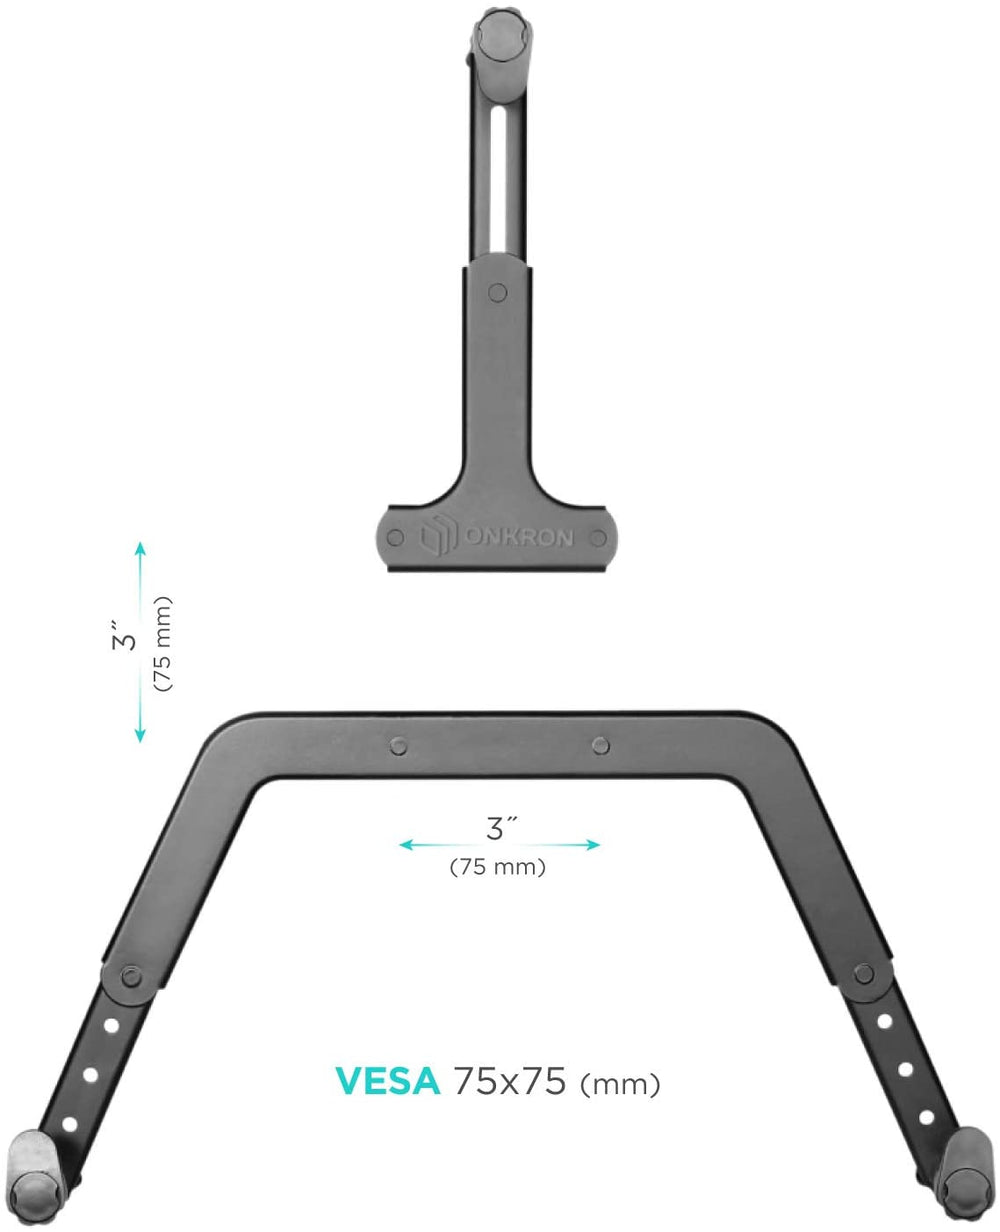 VESA Adapter Kit, 100x100 Pattern to 200x100 & 200x200